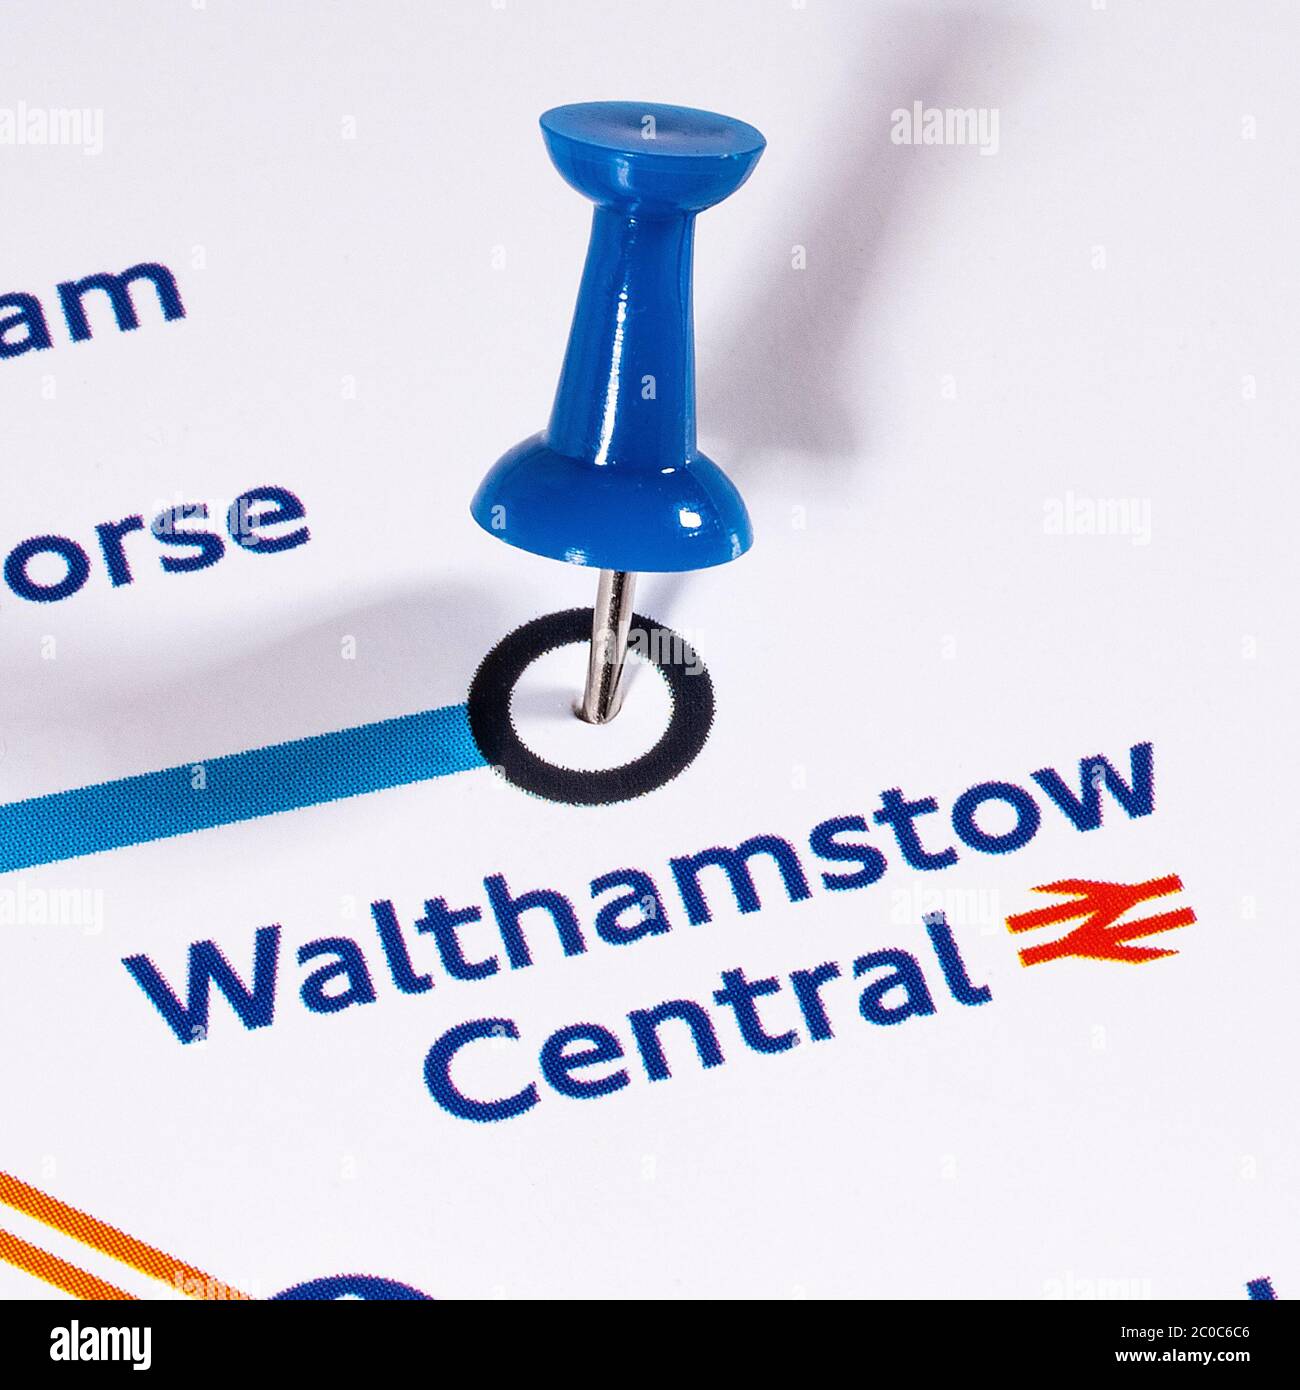 Londres, Royaume-Uni - 10 juin 2020 : une carte PIN indiquant l'emplacement de la gare centrale de Walthamstow sur un métro de Londres carte. Banque D'Images